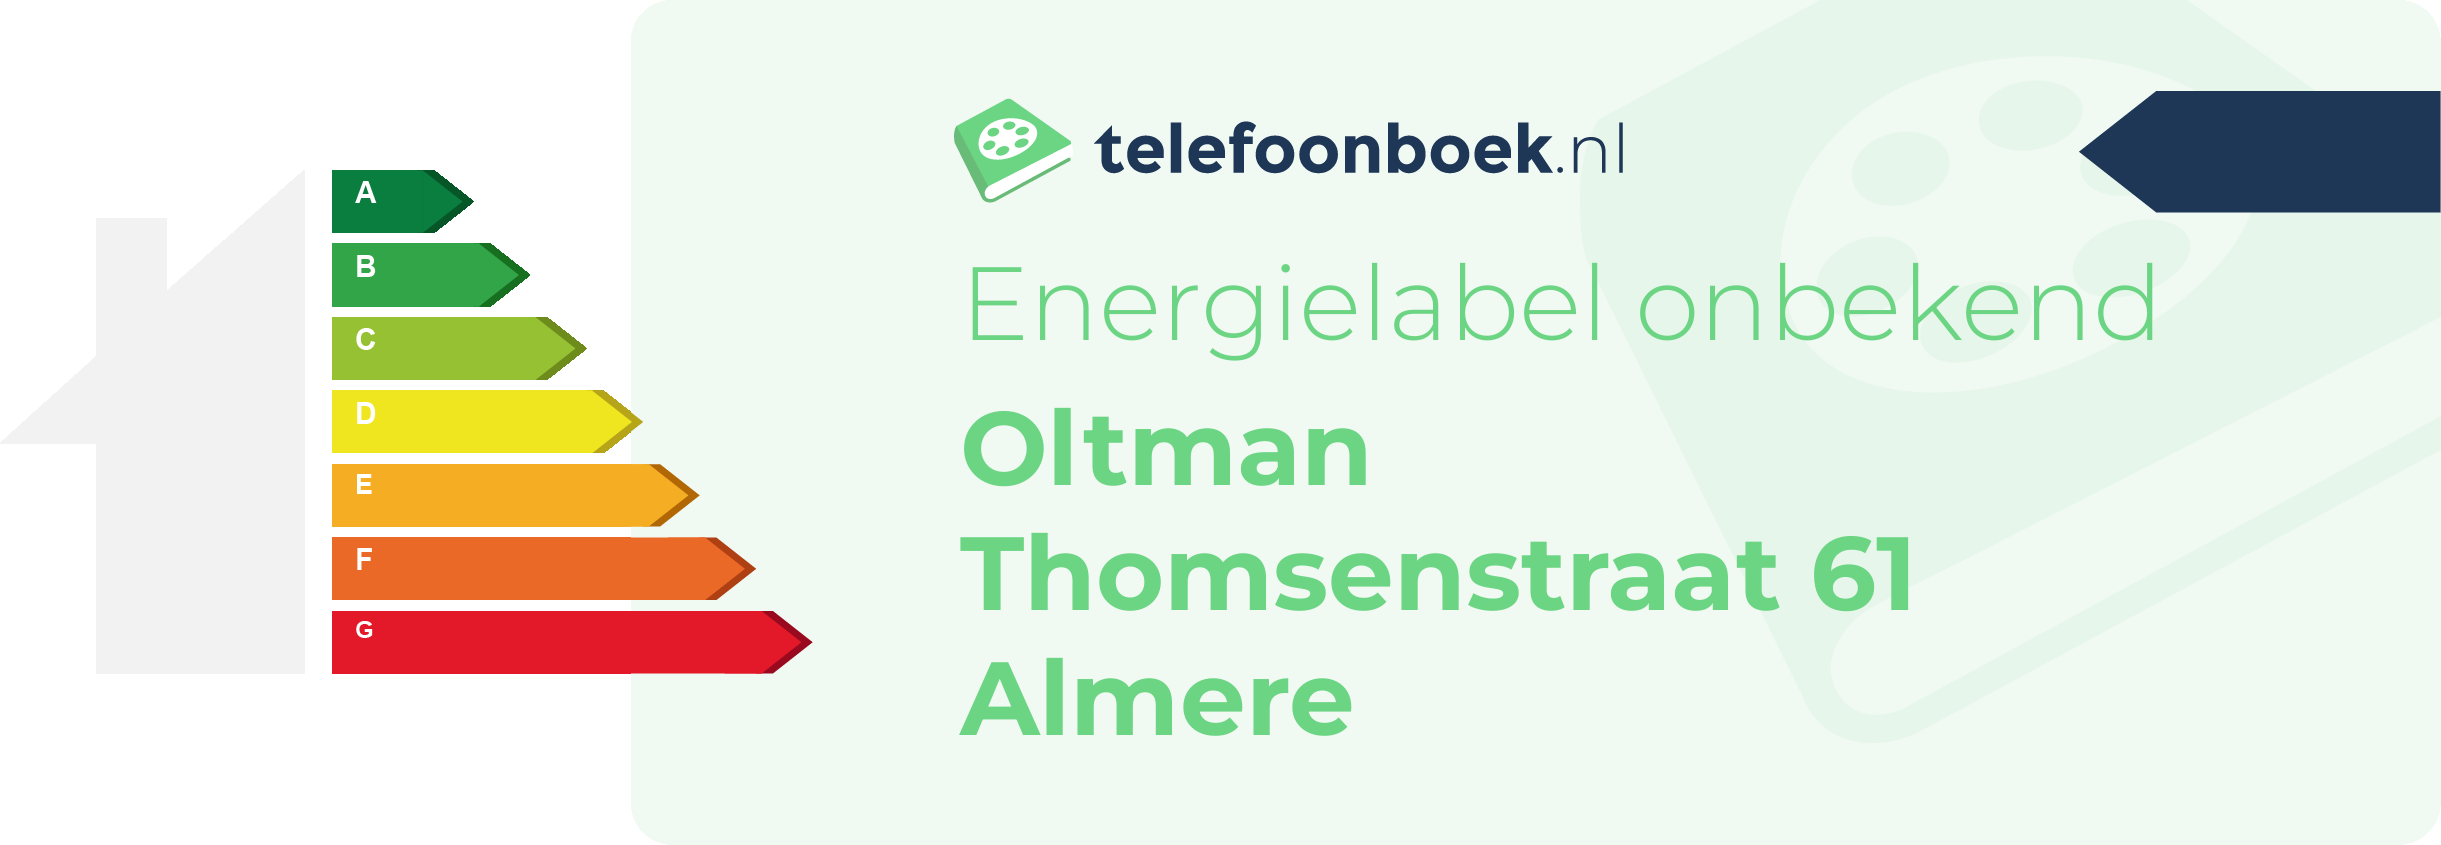 Energielabel Oltman Thomsenstraat 61 Almere